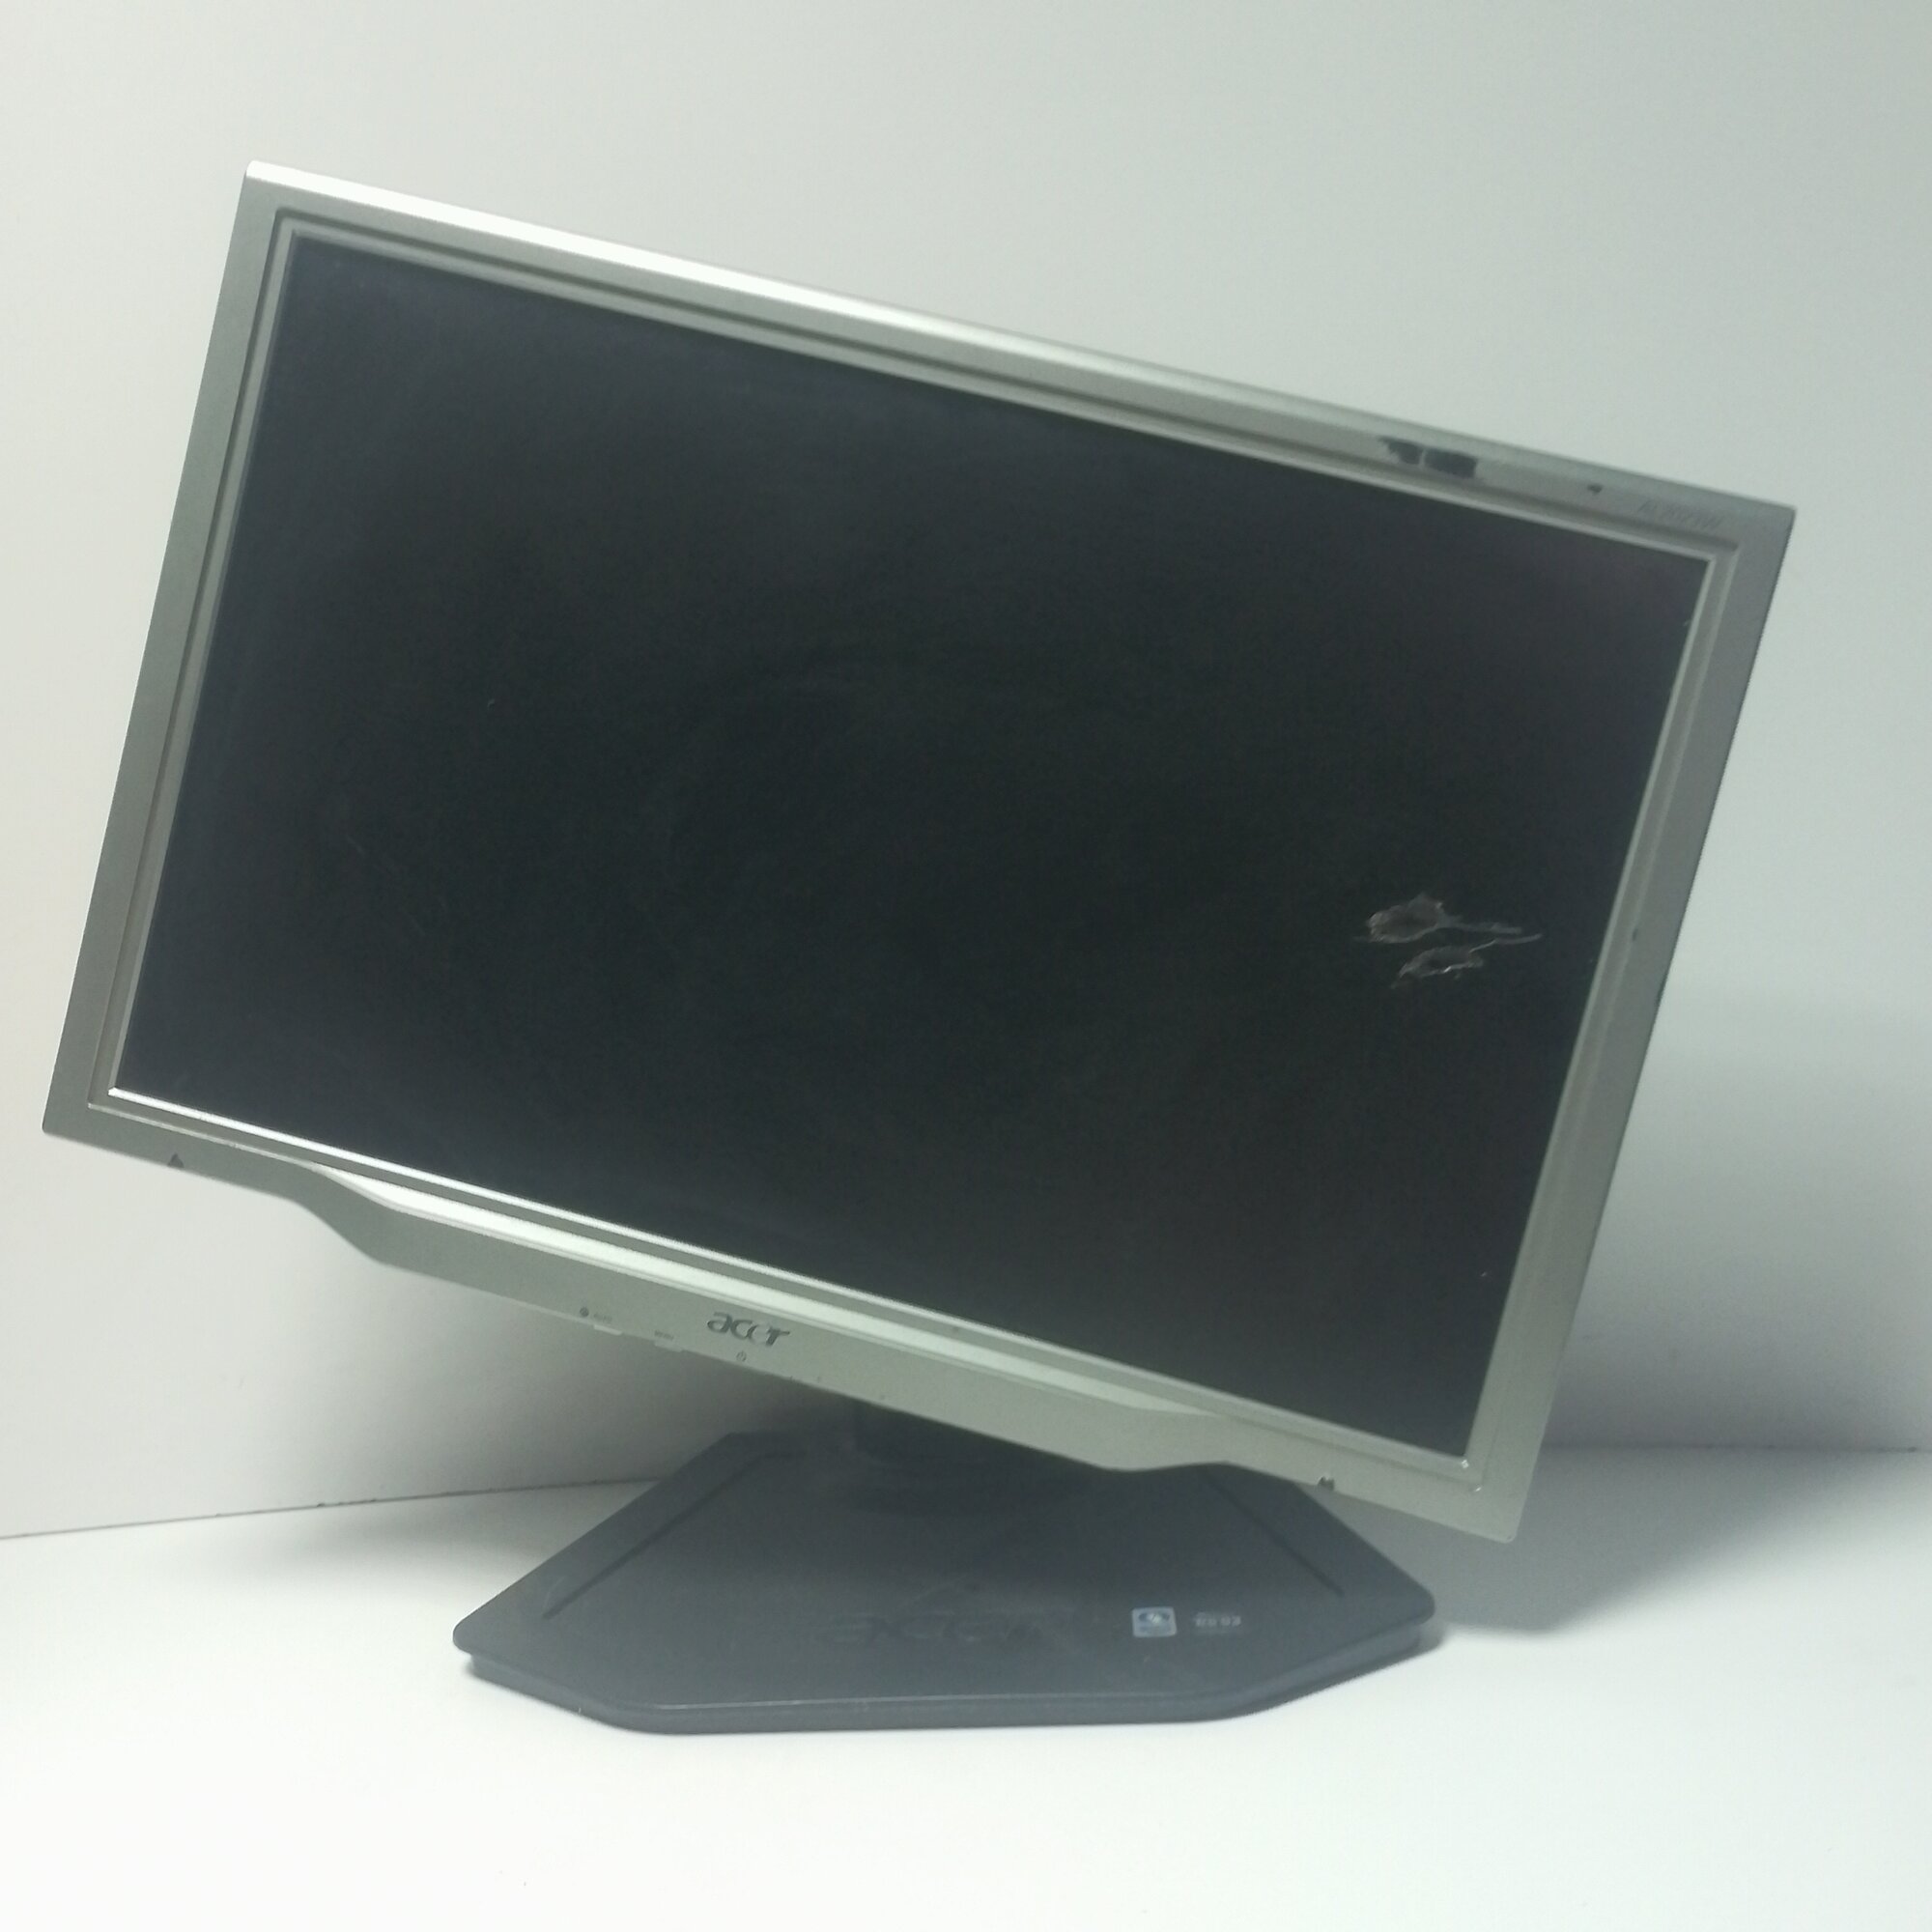 20" ЖК монитор Acer AL2023WAtdr с поворотом экрана(LCD, 1680x1050, D-Sub, DVI)